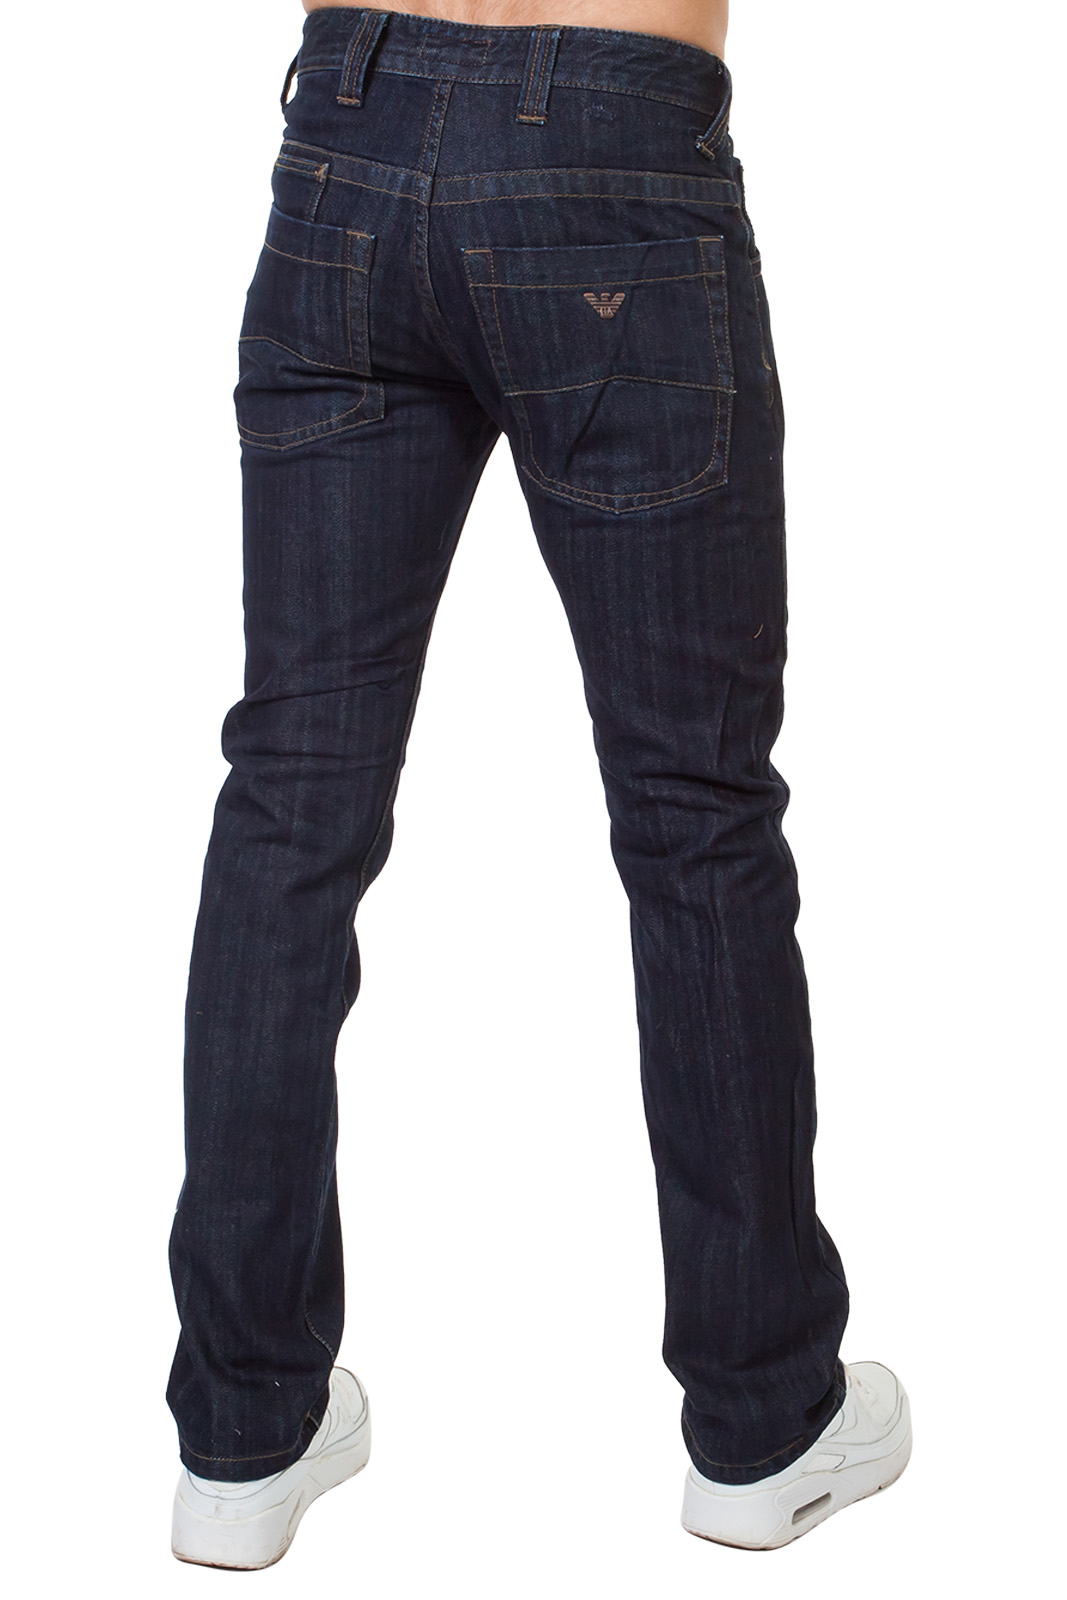 Заказать мужские джинсы в интернет магазине Военпро